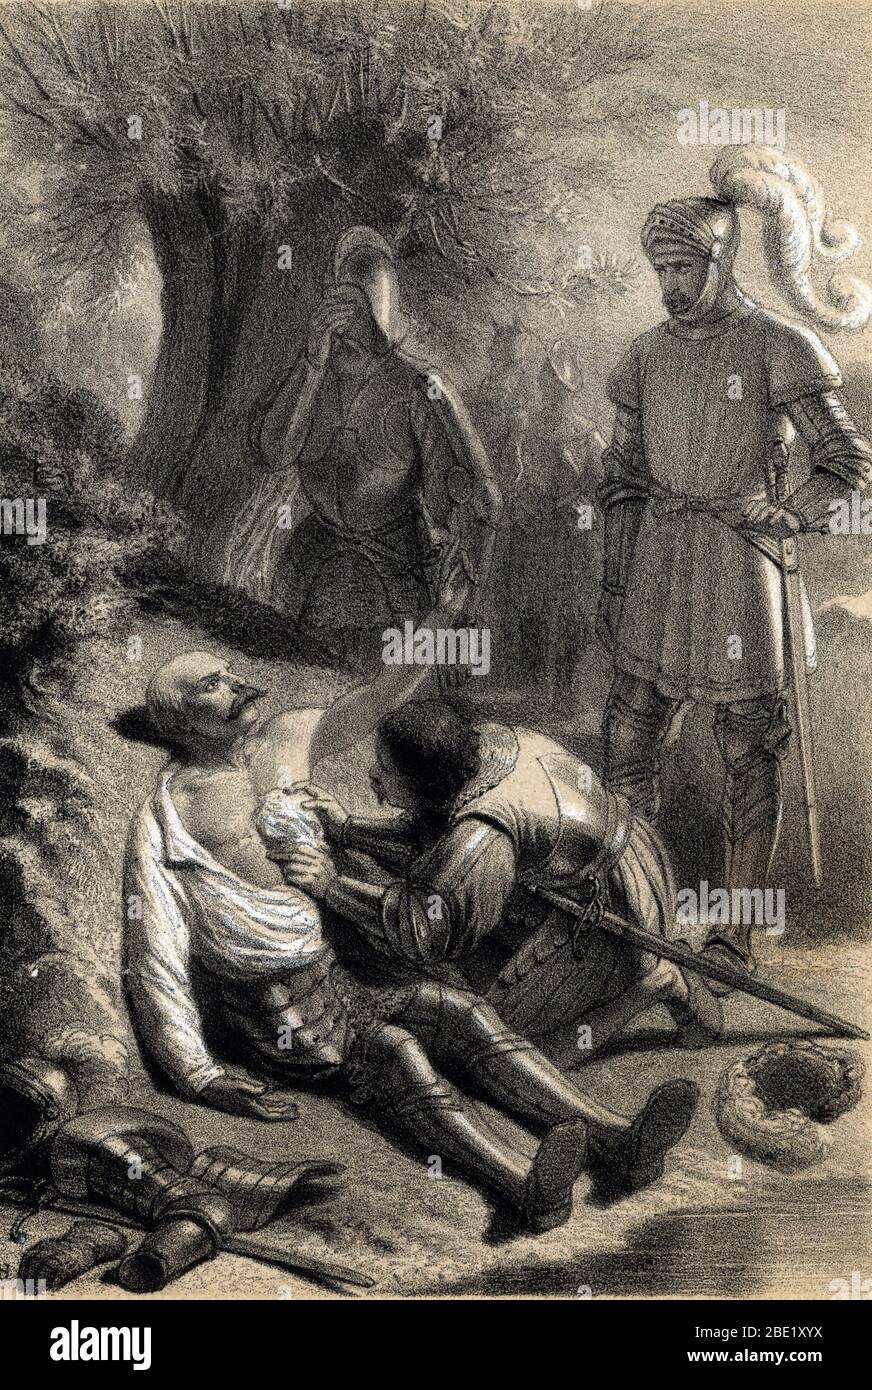 Le chevalier Bayard (Pierre Terrail) (1476-1524) mortellement blesse le 29  avril 1524 a Rebec alors qu'il couvrait la retraite de l'armee francaise d  Stock Photo - Alamy